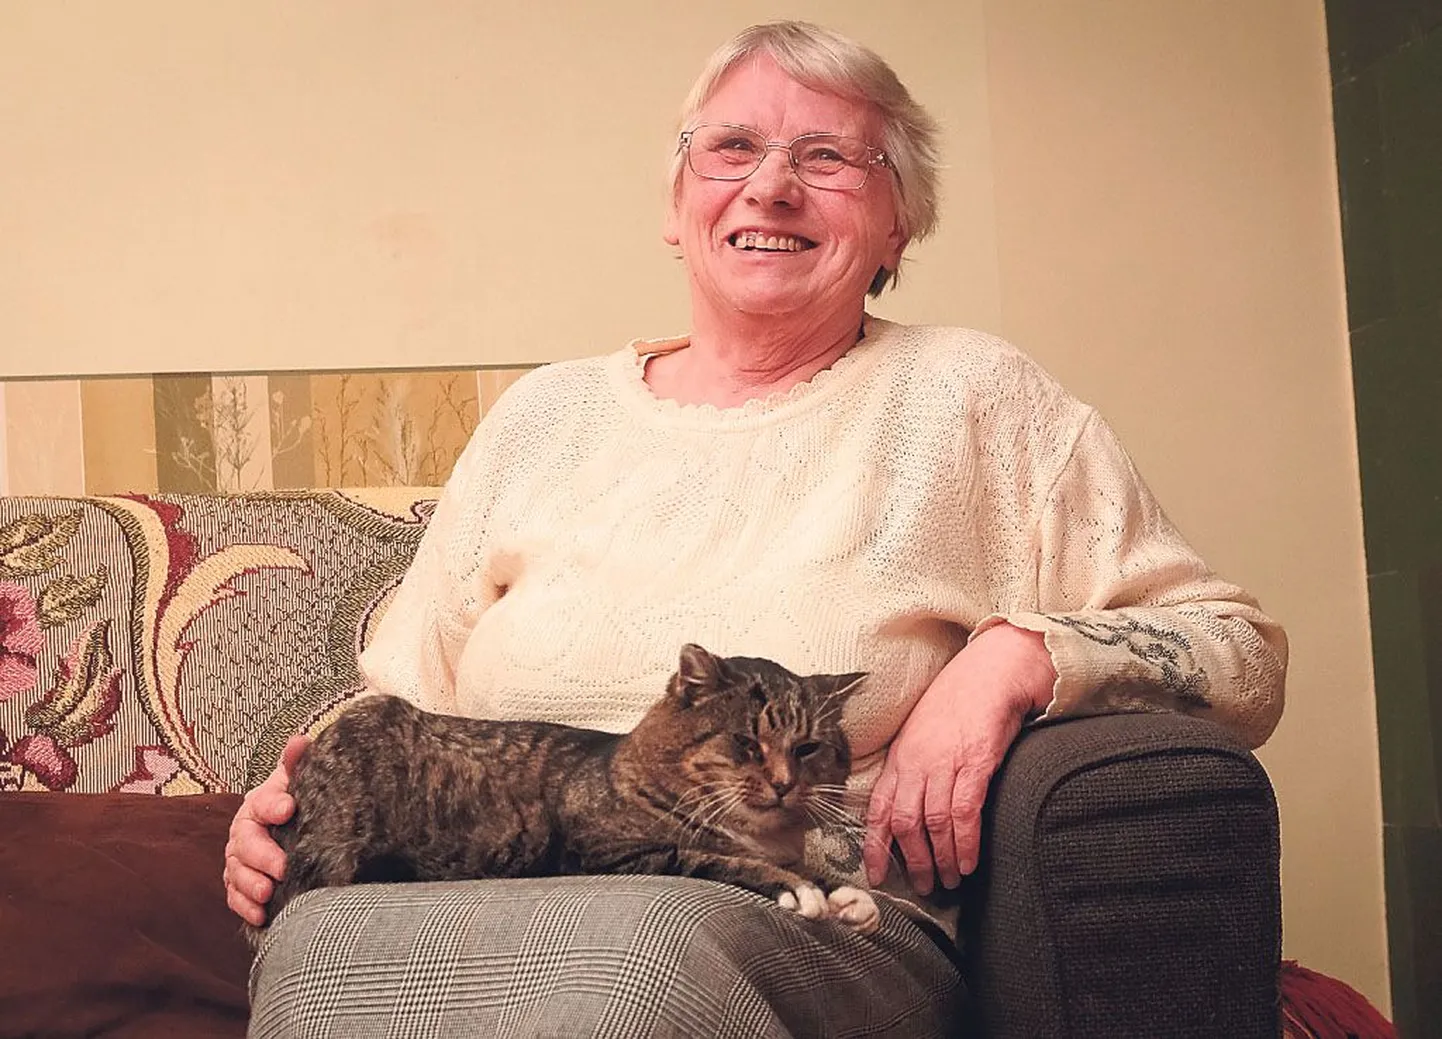 Tänavu aitas Leili Vaino varga kinni nabida, ligi kolm aastat tagasi jaanauris päästis naine 26kraadise pakase käest tänavale visatud kassi, kes näitab oma tänu siiani.